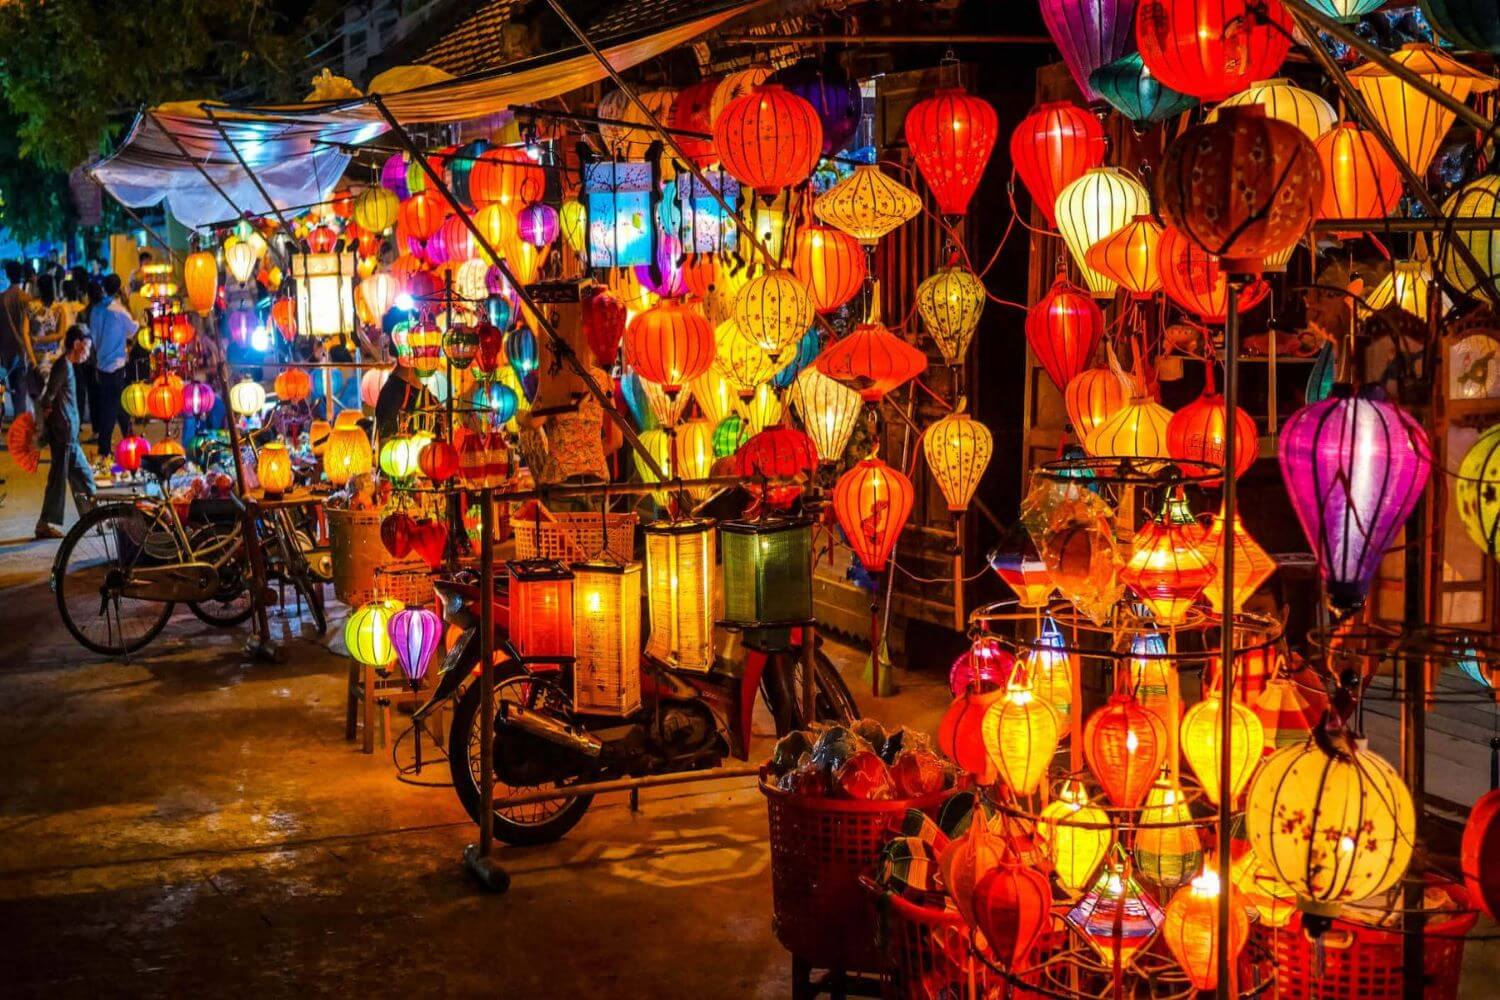 Hoi An Night Market - Hoi An